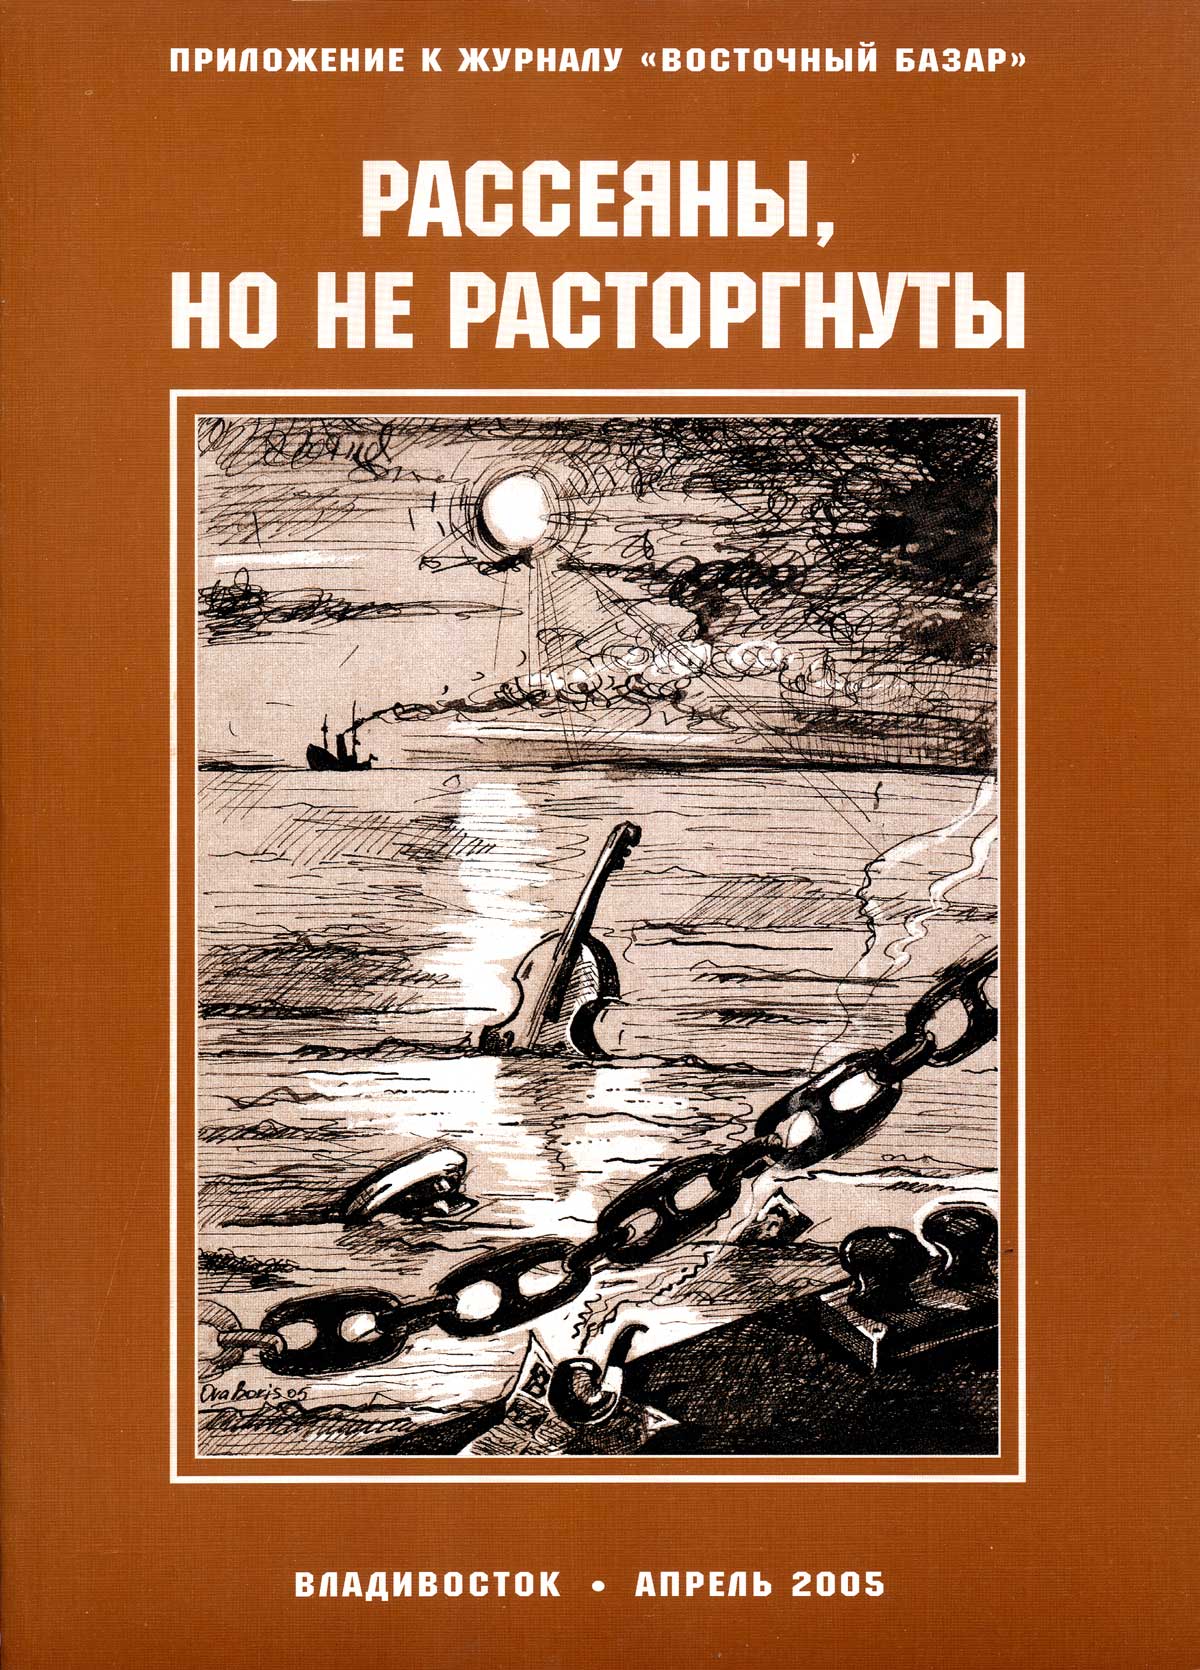 Сборник статей из журнала "Восточный базар о Русском Зарубежье I том (1998-2005 гг.)